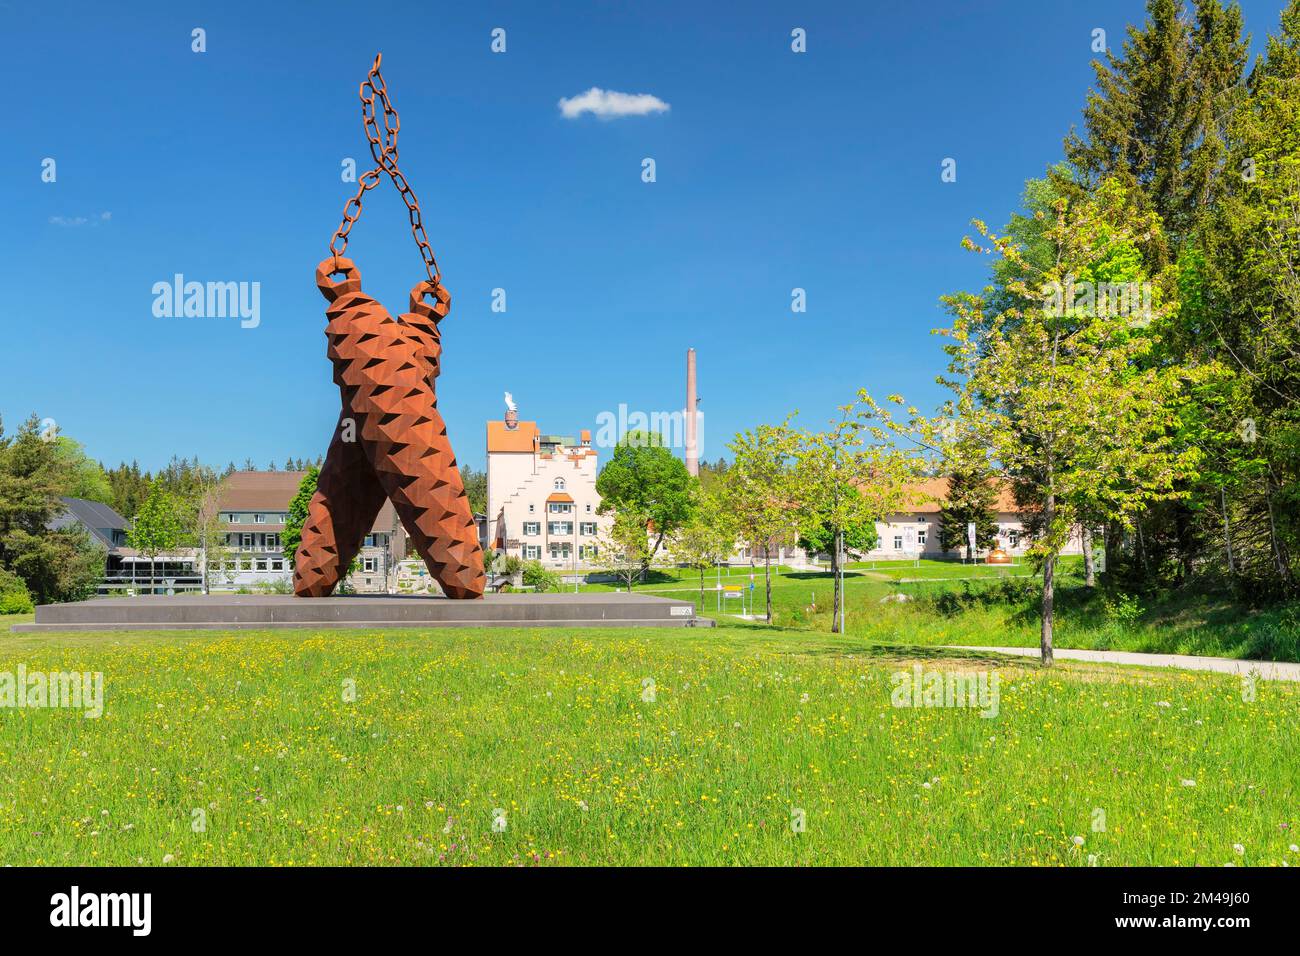 Tannenzapfen-Skulptur, Künstler Stefan Strumbel, Rothaus-Brauerei, Grafenhausen, Schwarzwald, Baden-Württemberg, Deutschland, Schwarzwald, Grafenhausen Stockfoto